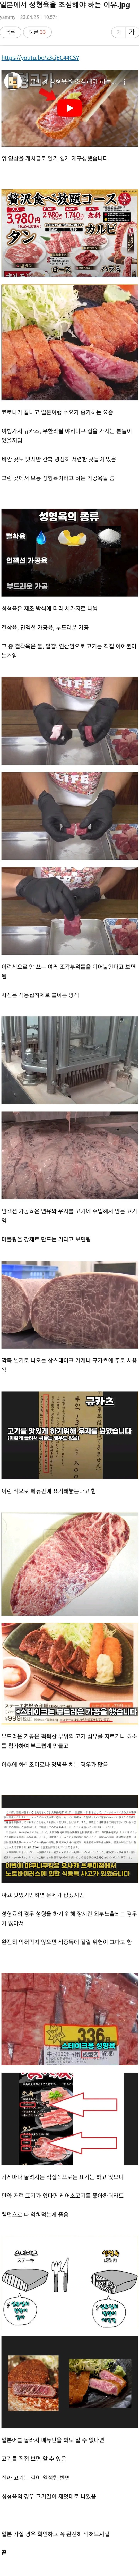 일본에서 고기 사먹을때 주의할점.jpg